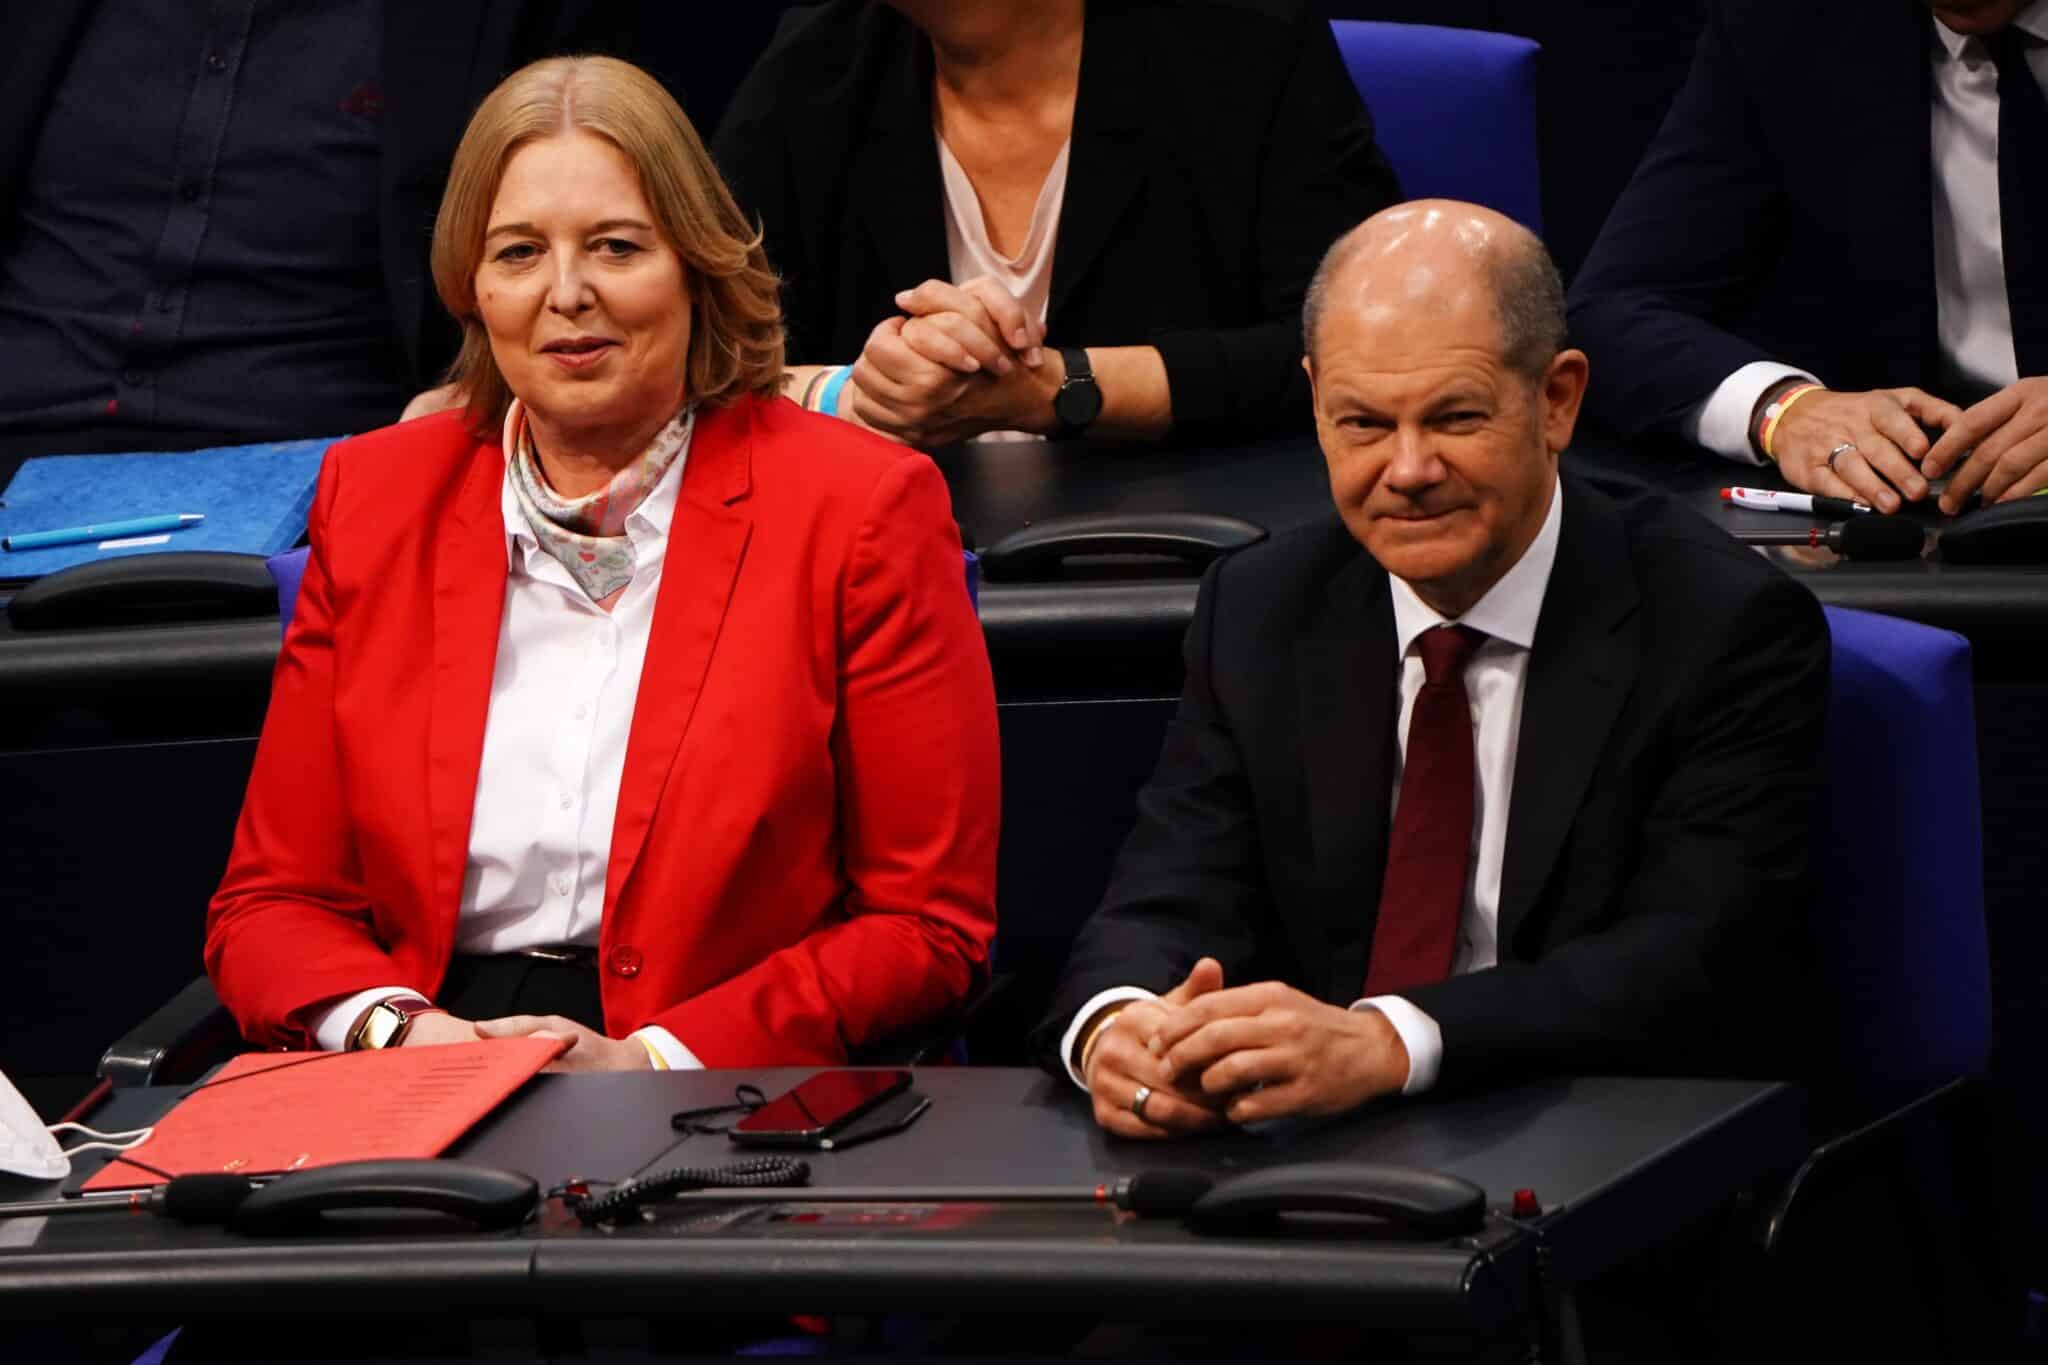 La socialdemócrata Bärbel Bas, junto a Olaf Scholz, que previsiblemente será el futuro canciler alemán